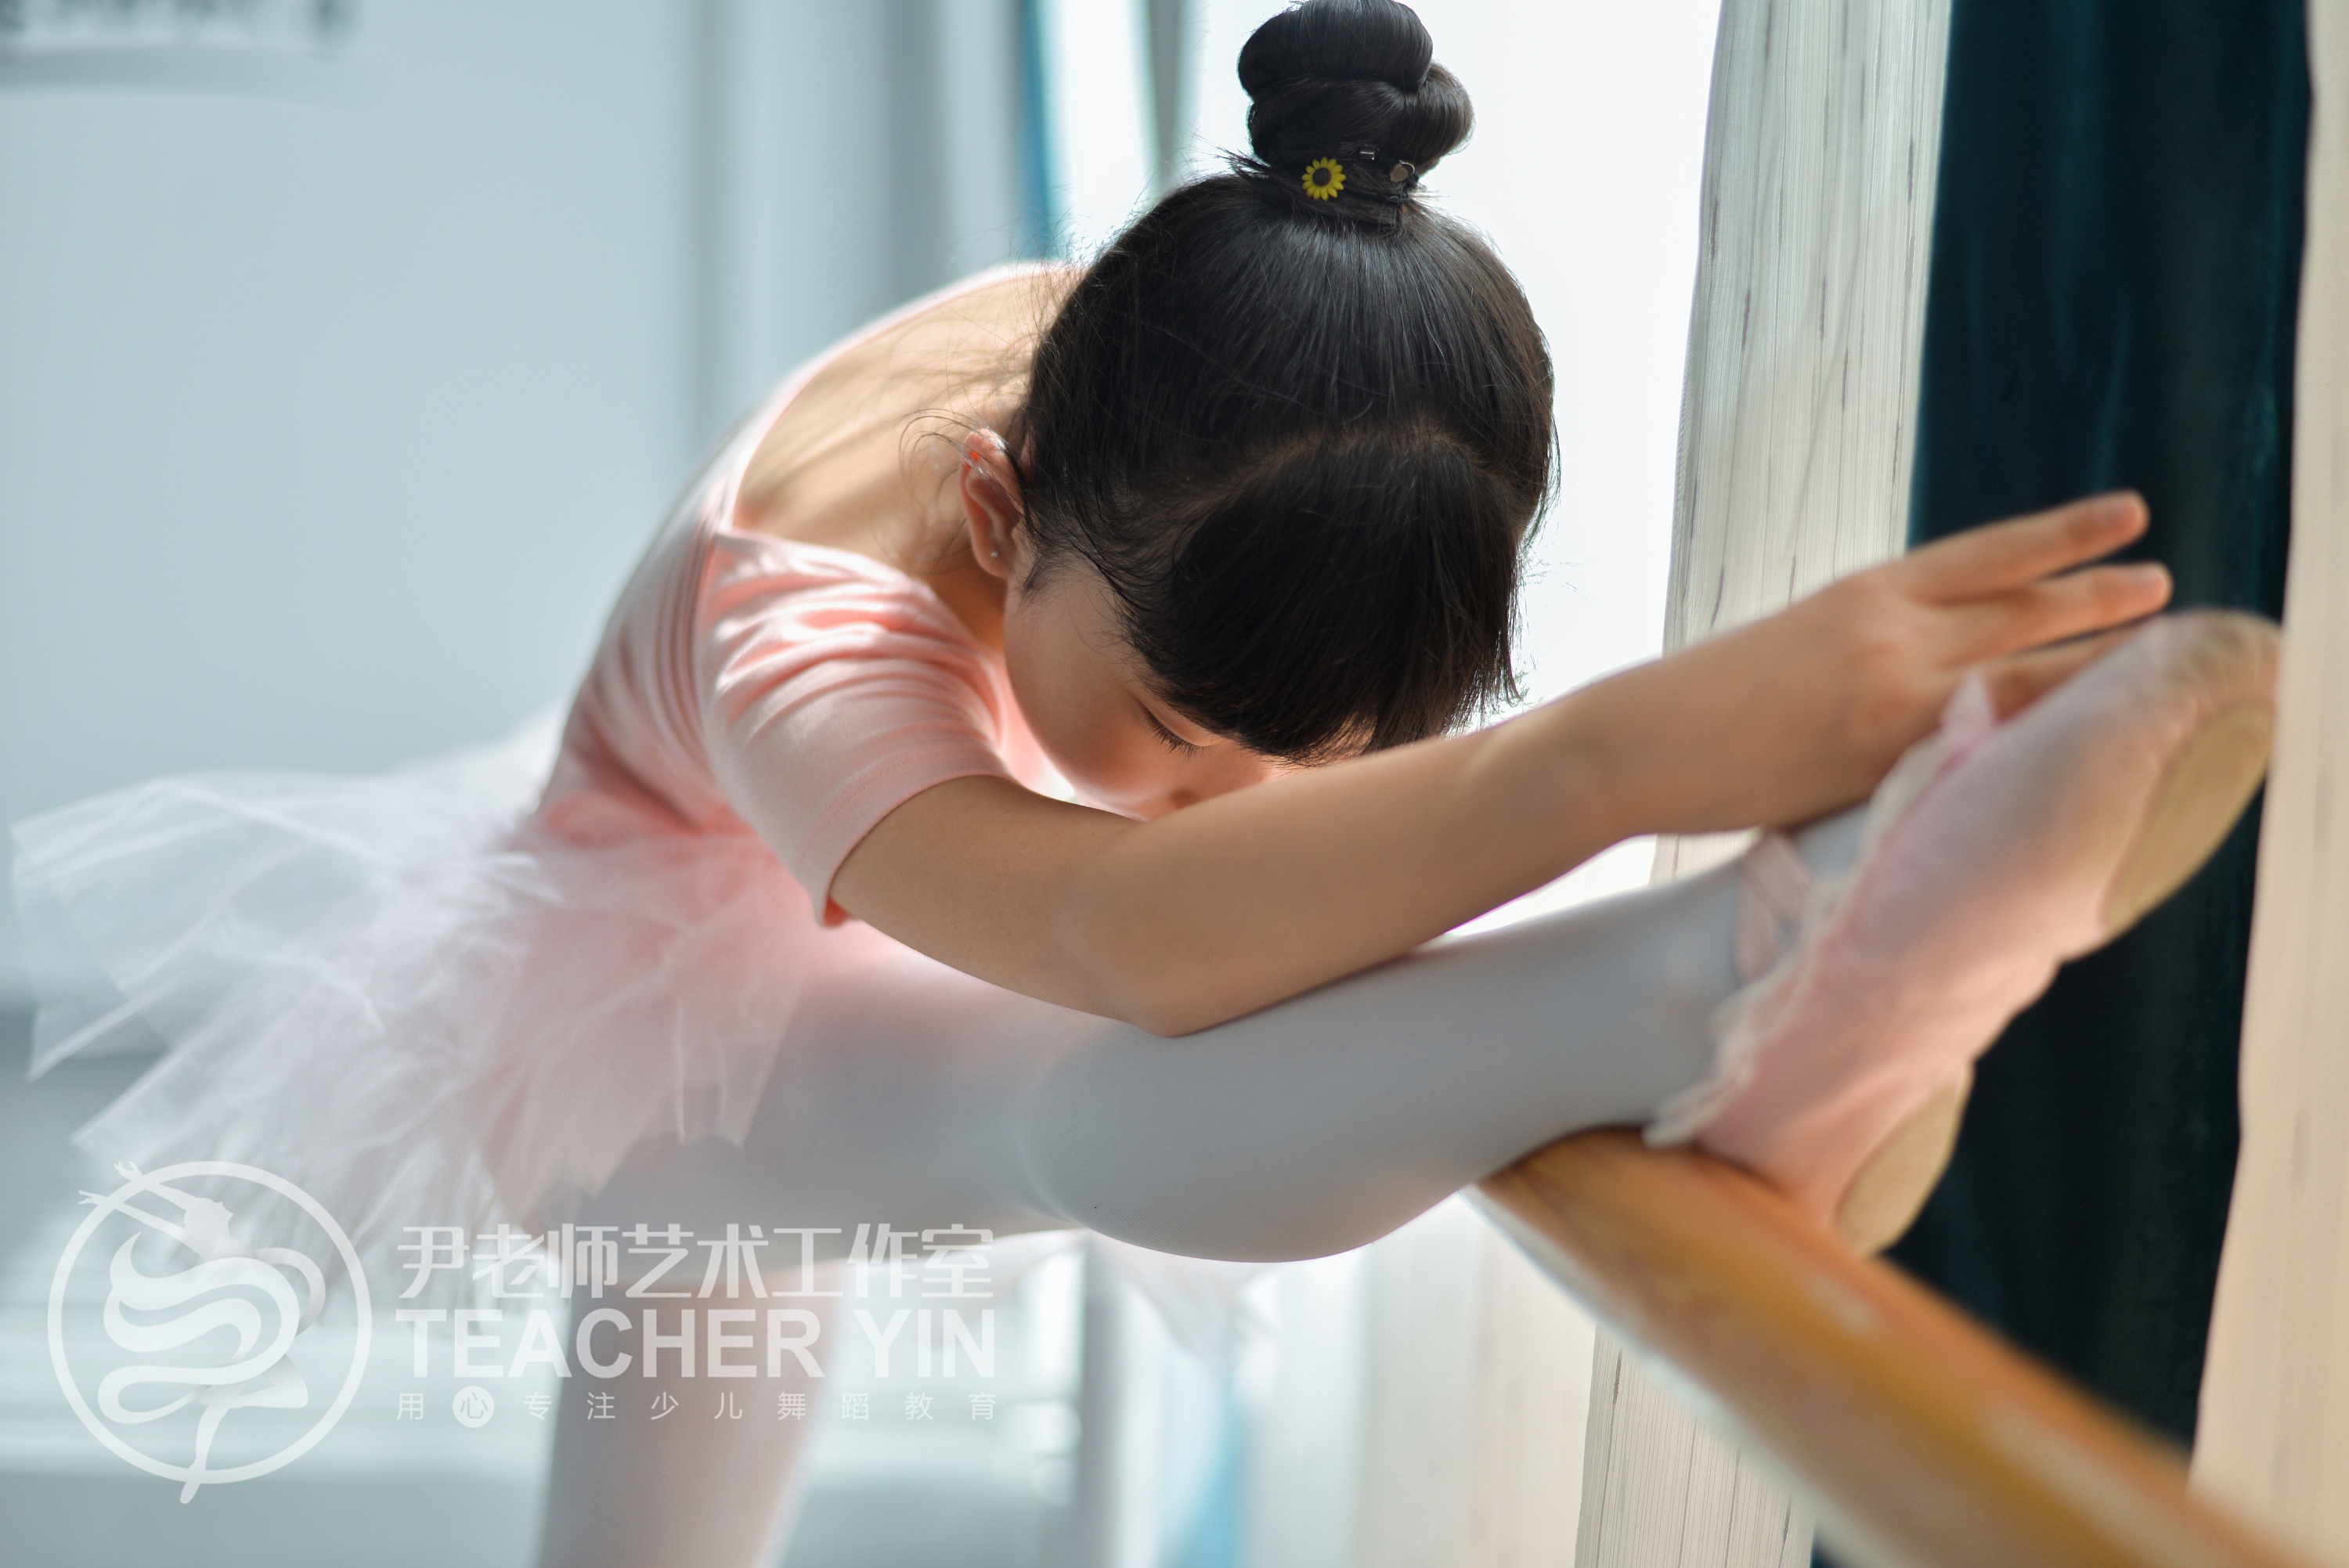 尹梦瑶尹老师艺术工作室少儿舞蹈教育培训学员